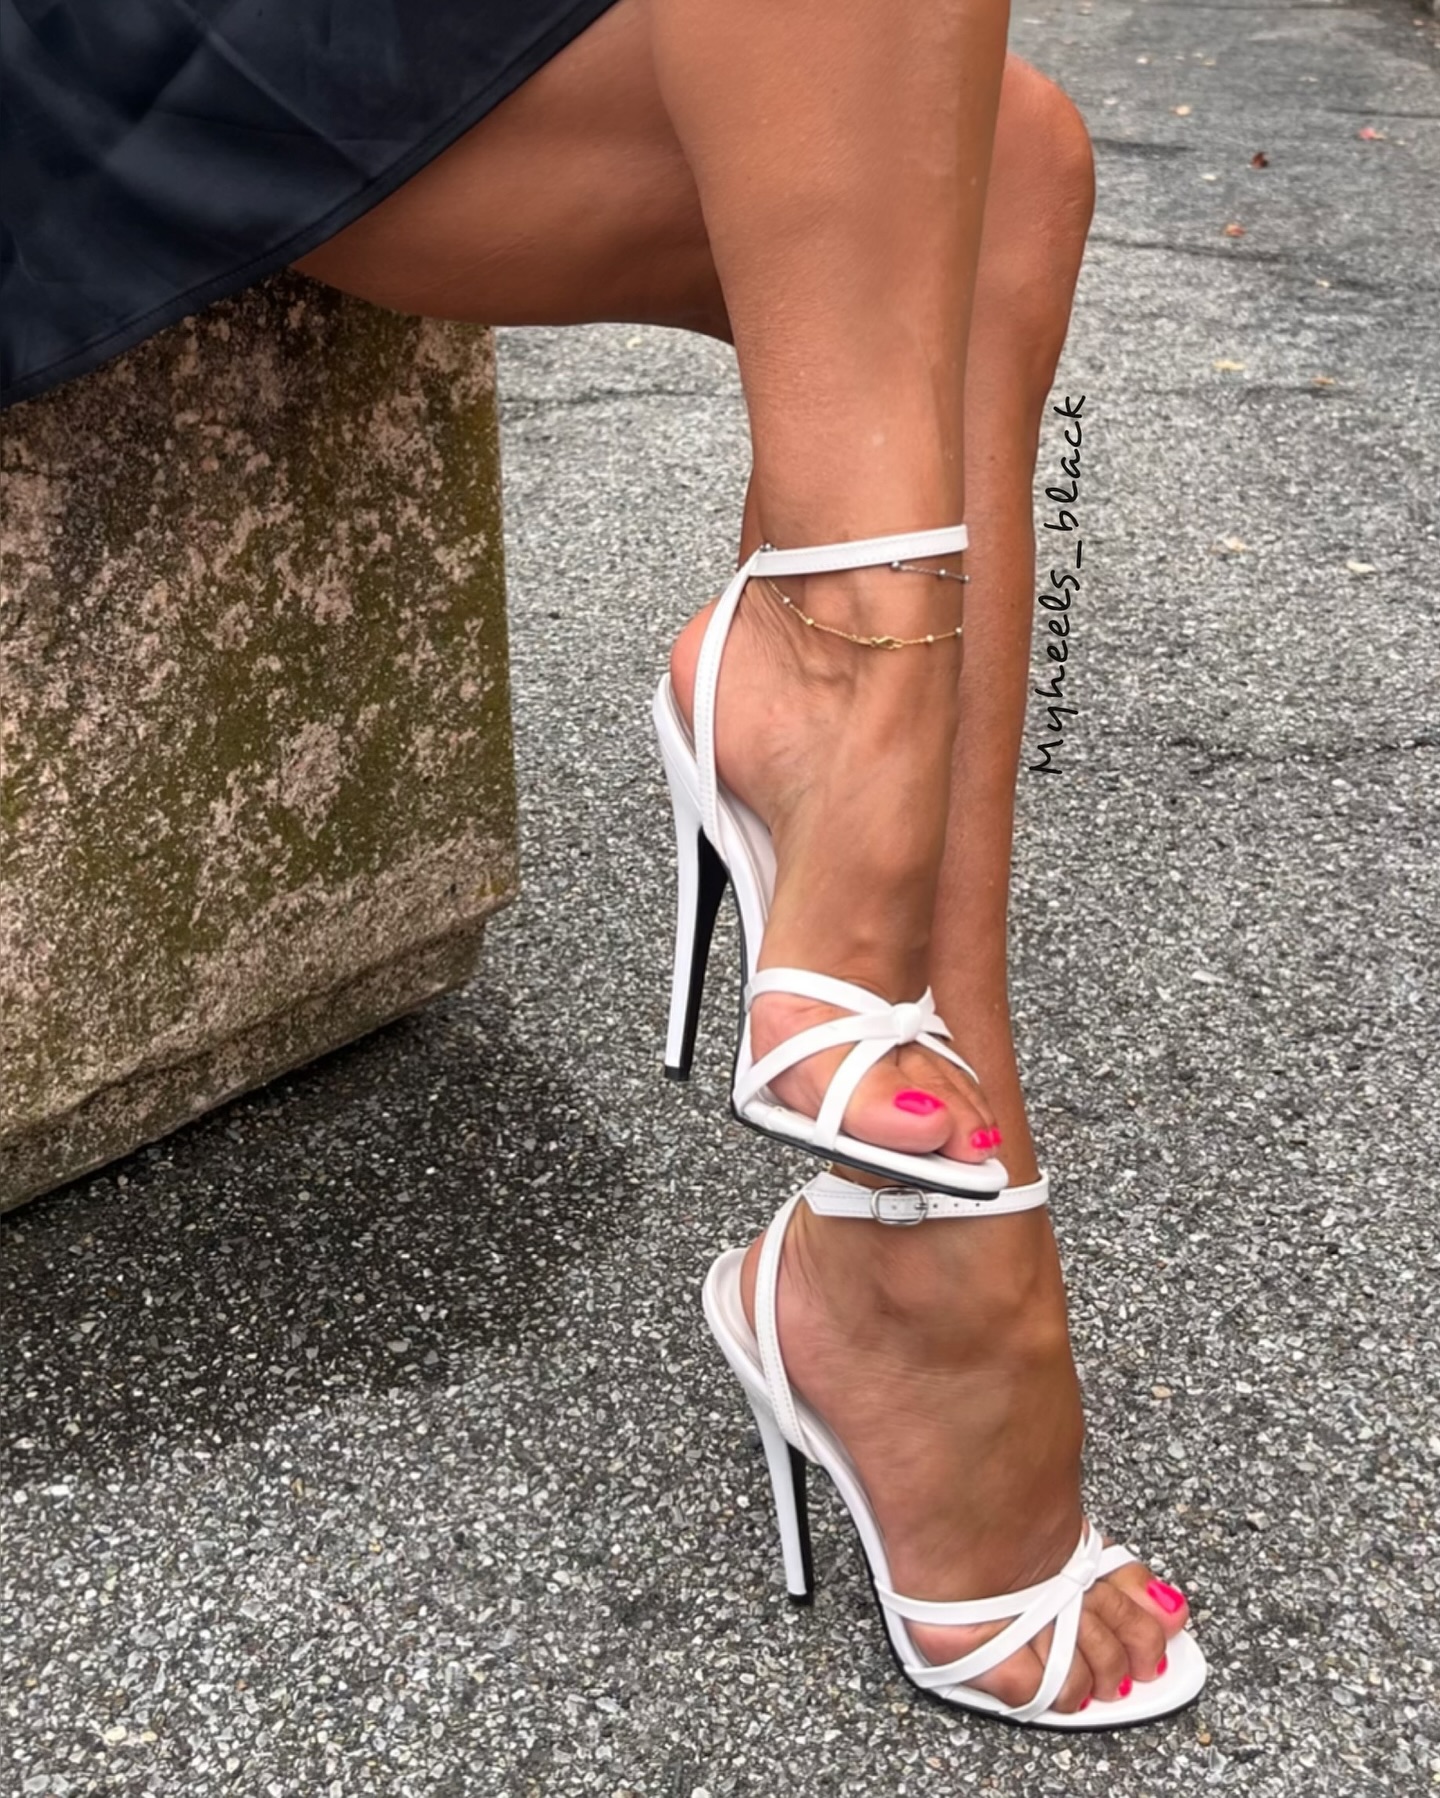 #louboutinheels #highheels #tacchi #scarpe #tacco12 #shoeaddict #heelsaddict #stilettoheels #italianshoes #heels #heelsfashion #sokate120 #redsole #tacchiaspillo #moda #shoestyle #louboutin #modelshoes #feet #instagood #instafashion #tacones #instalove #redsole #legs